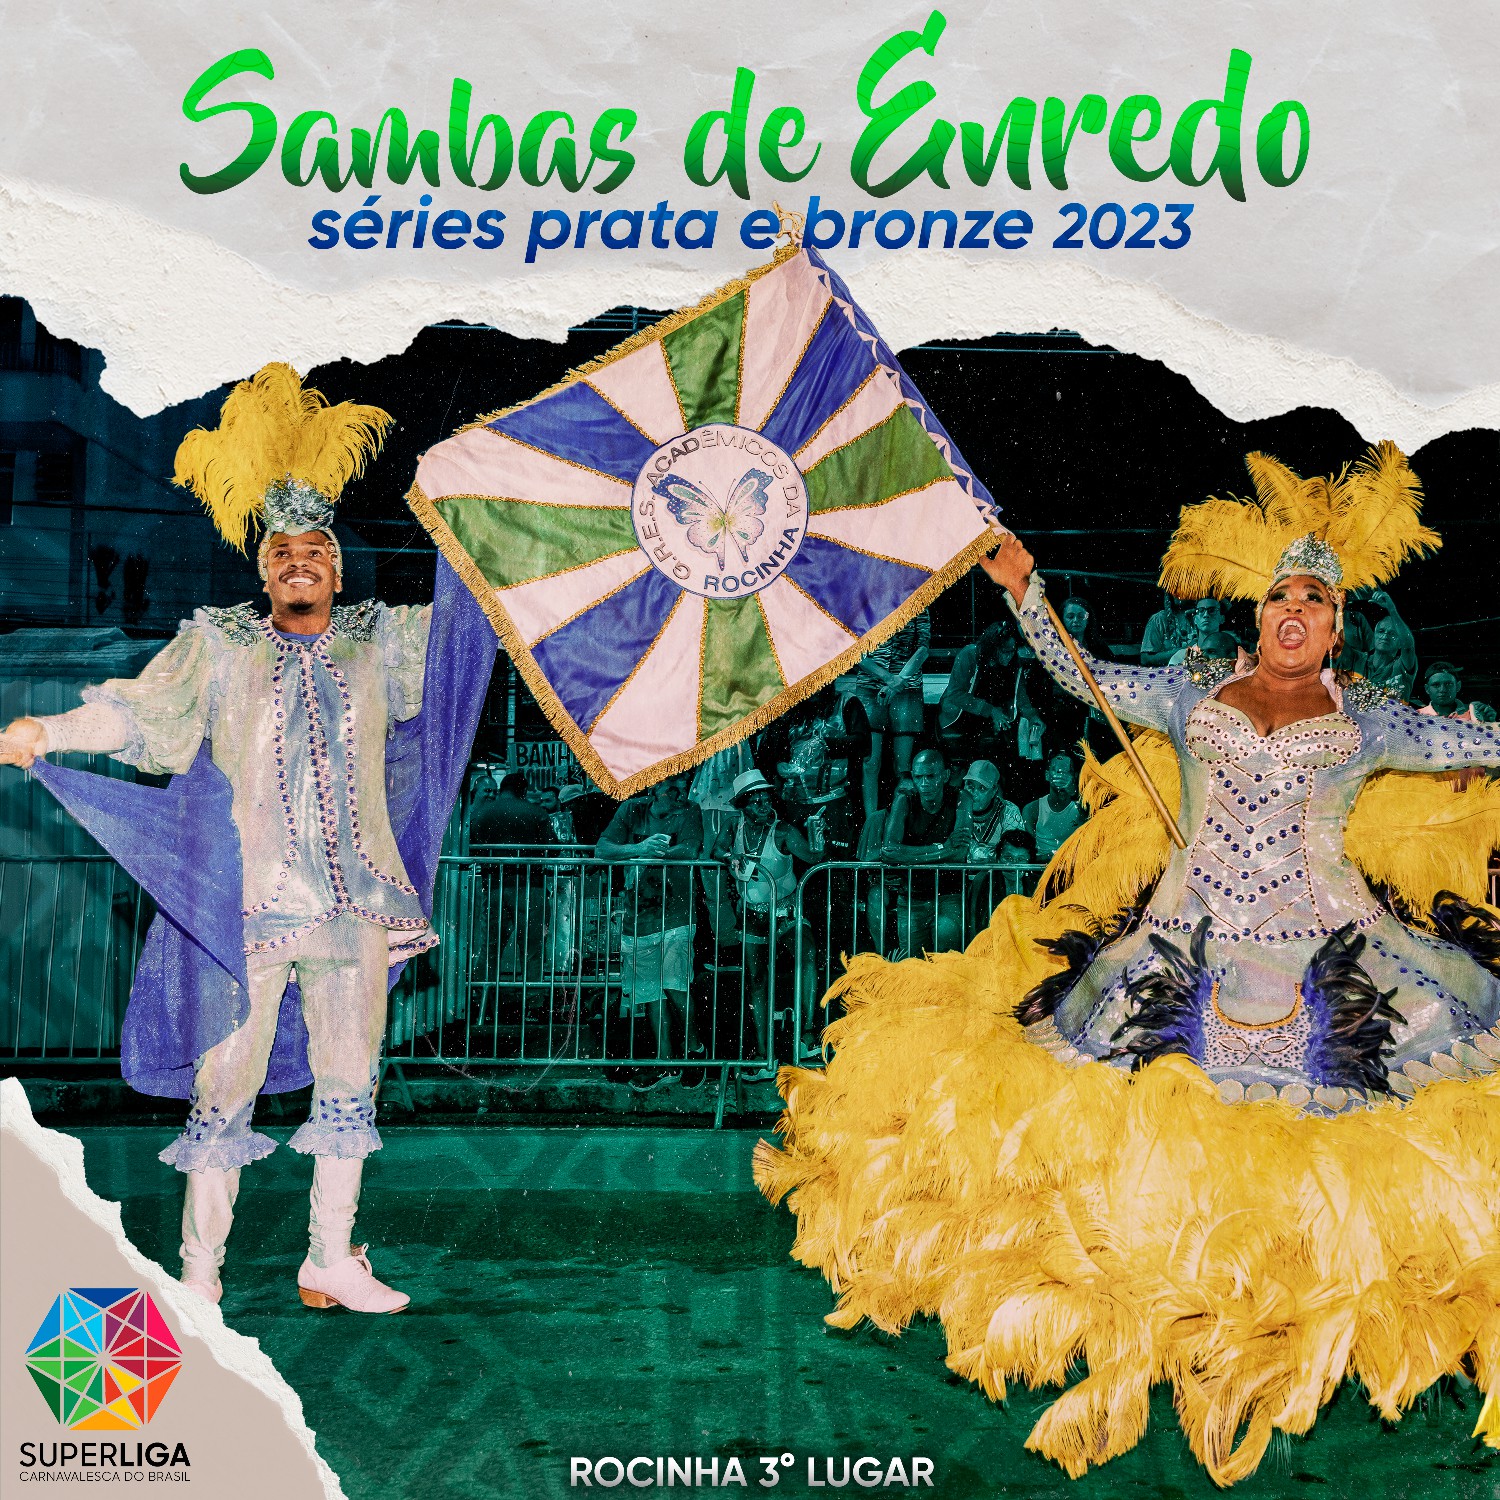 Capa do CD dos sambas da Superliga para 2023. Foto: Divulgação/Superliga